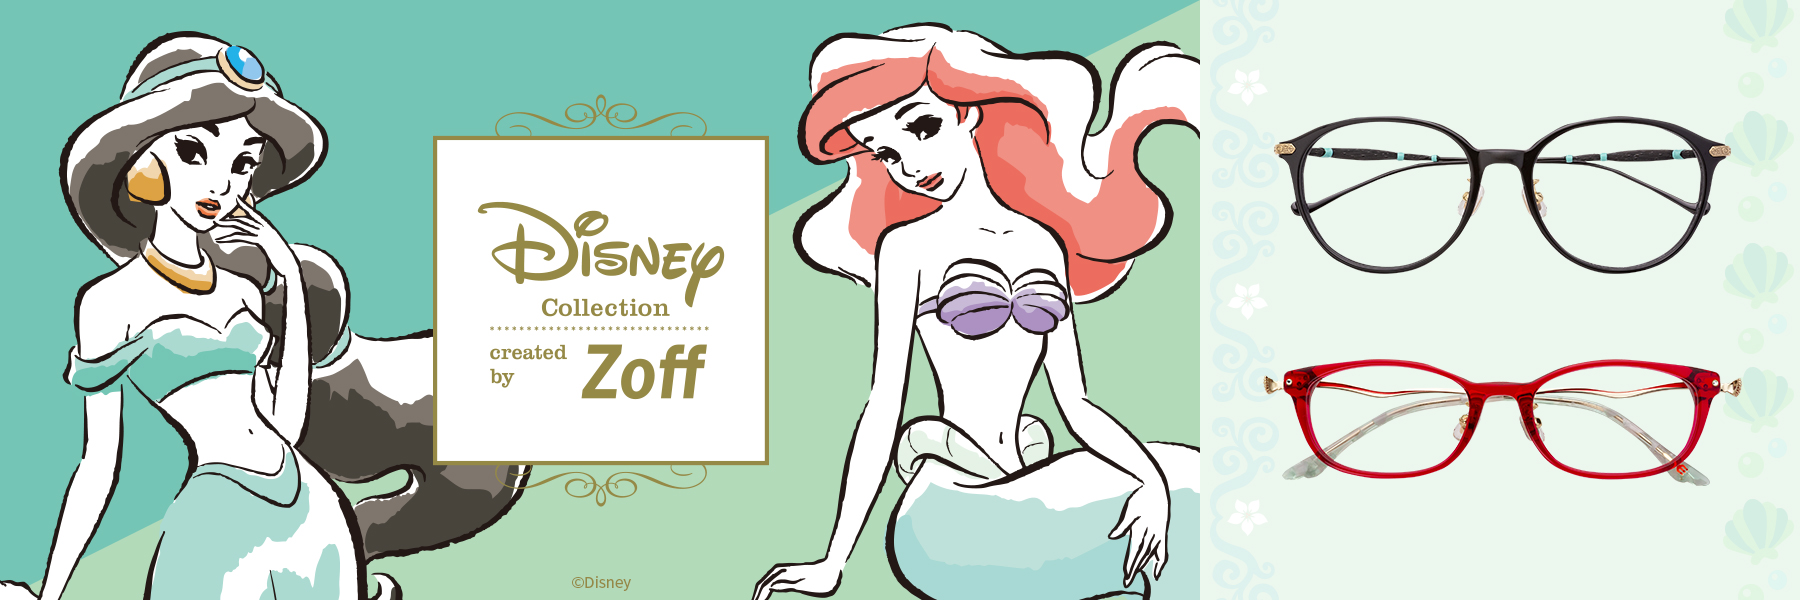 Zoff ゾフ Disney Collection created by Zoff Princess Series Classic Line ディズニーコレクション クリエイテッド バイ ゾフ プリンセスシリーズ クラシックライン